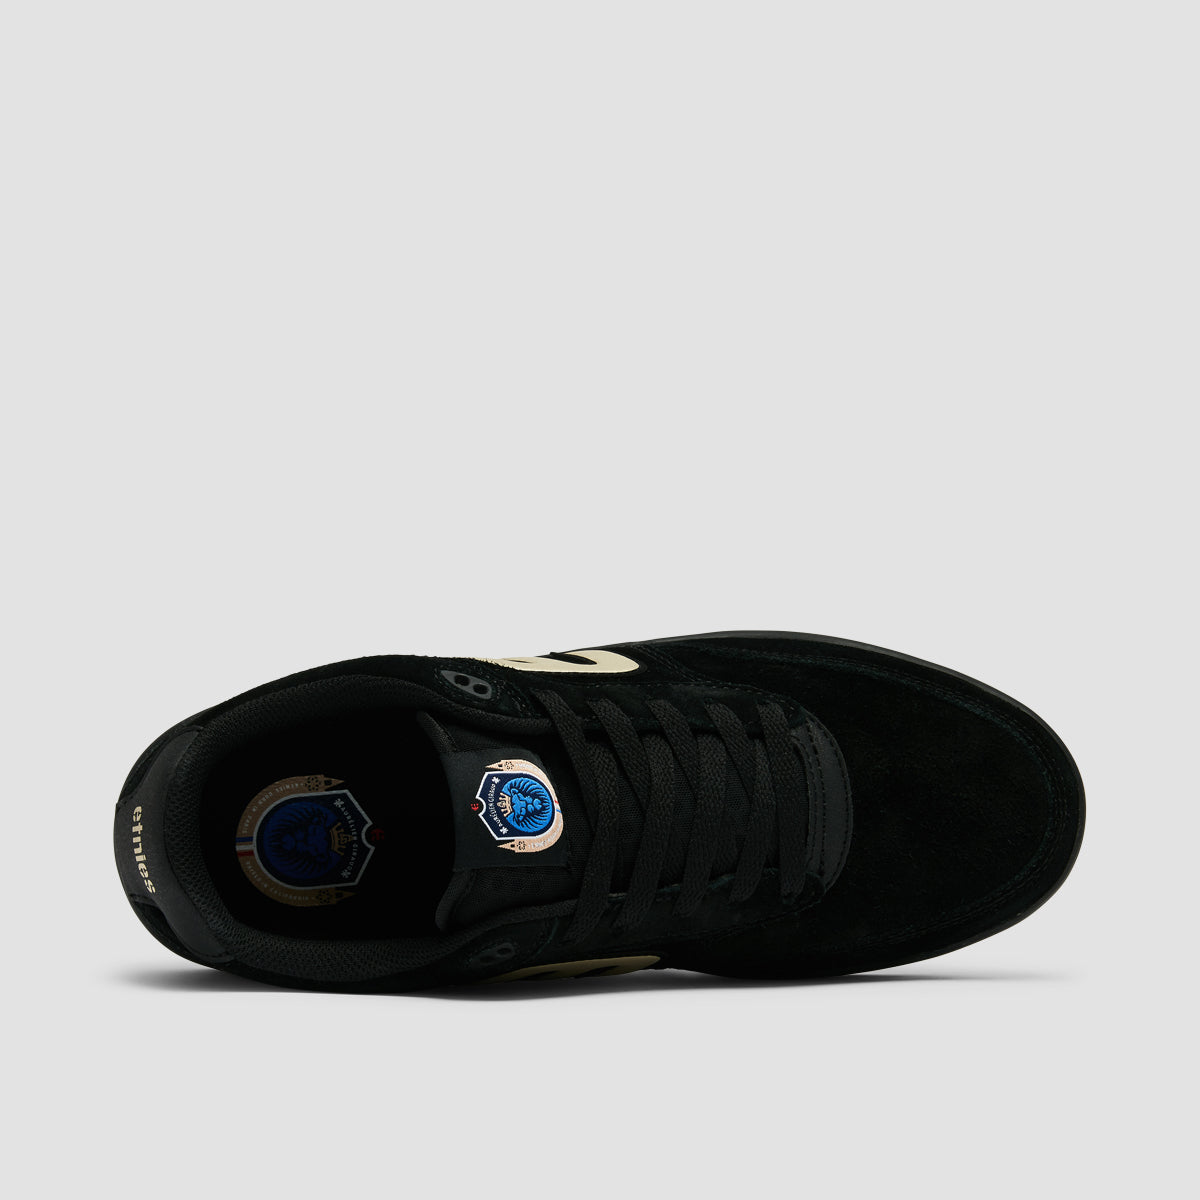 Etnies The Aurelien Michelin Shoes - Black/Gold